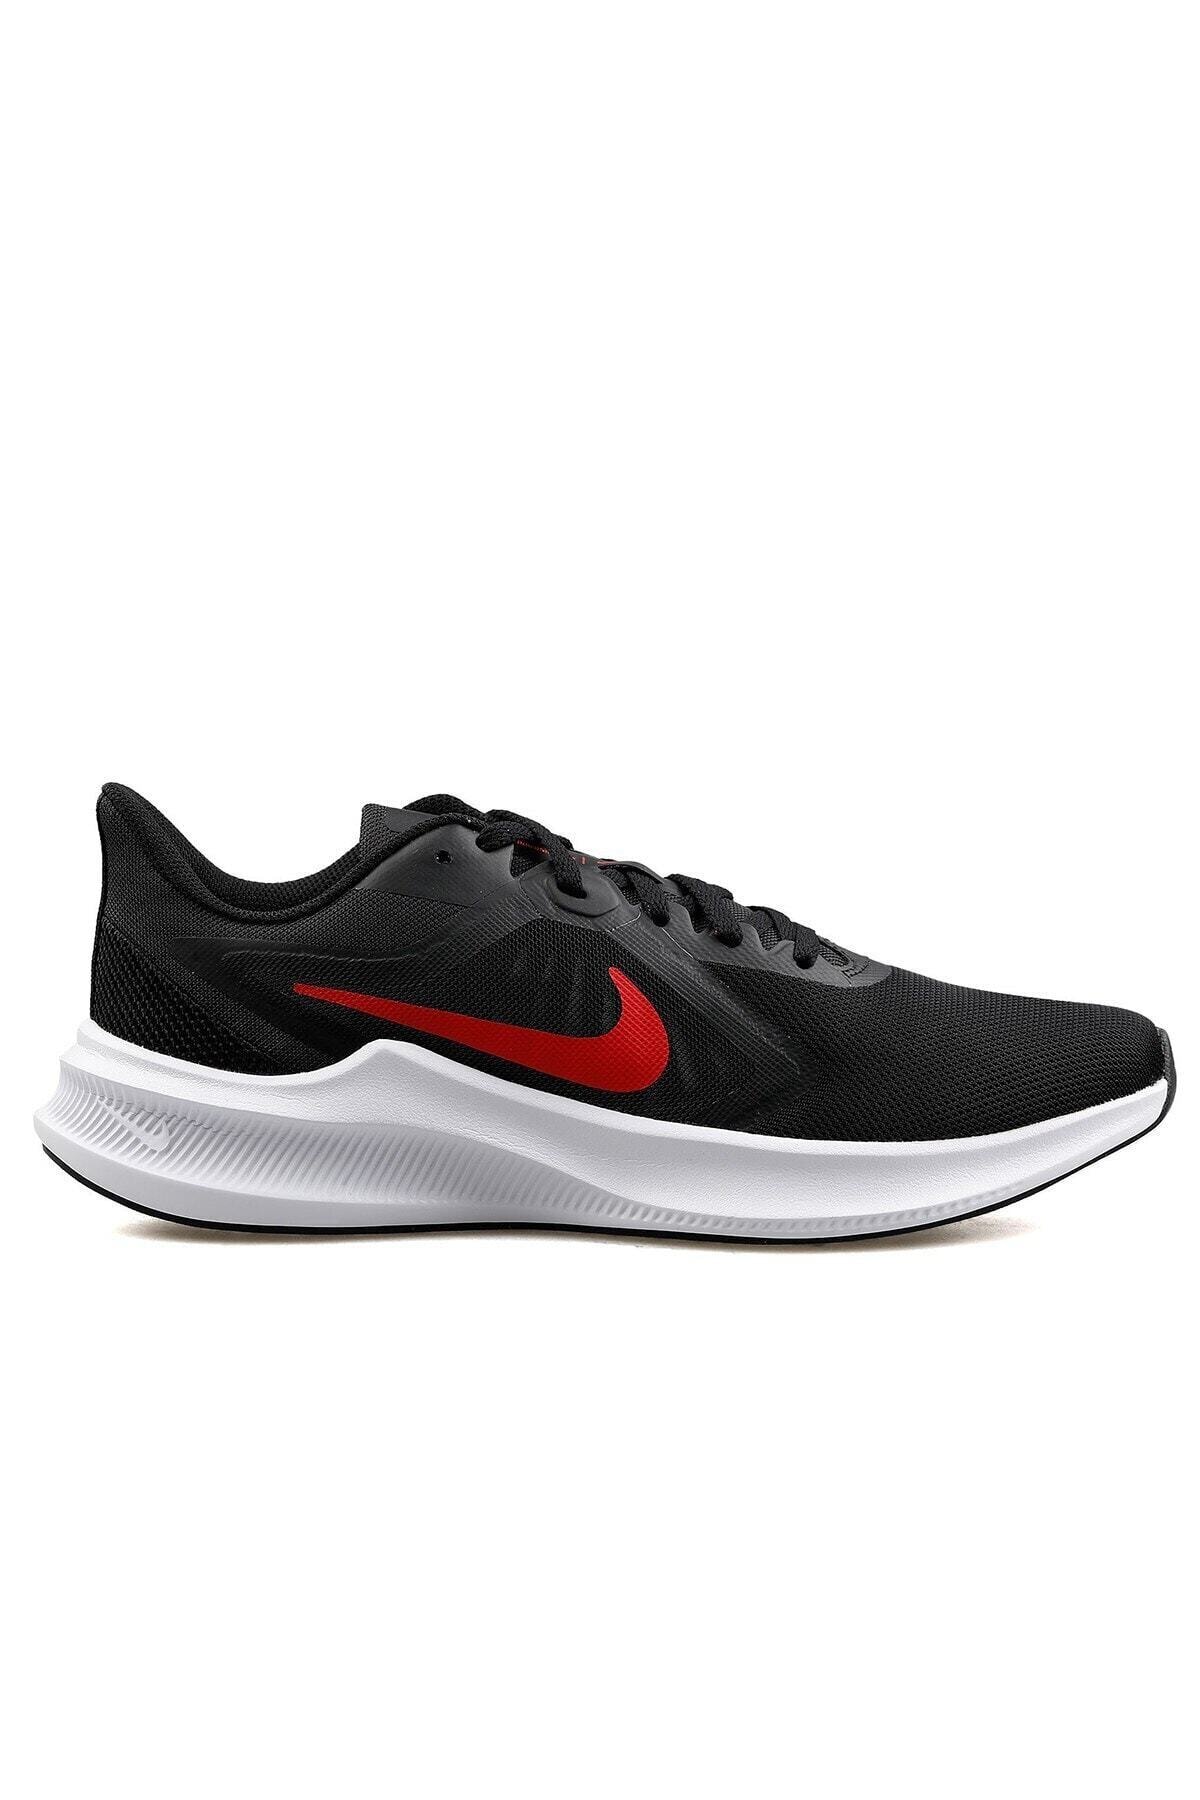 Nike Cı9981-006 Downshifter 10 Koşu Ayakkabısı